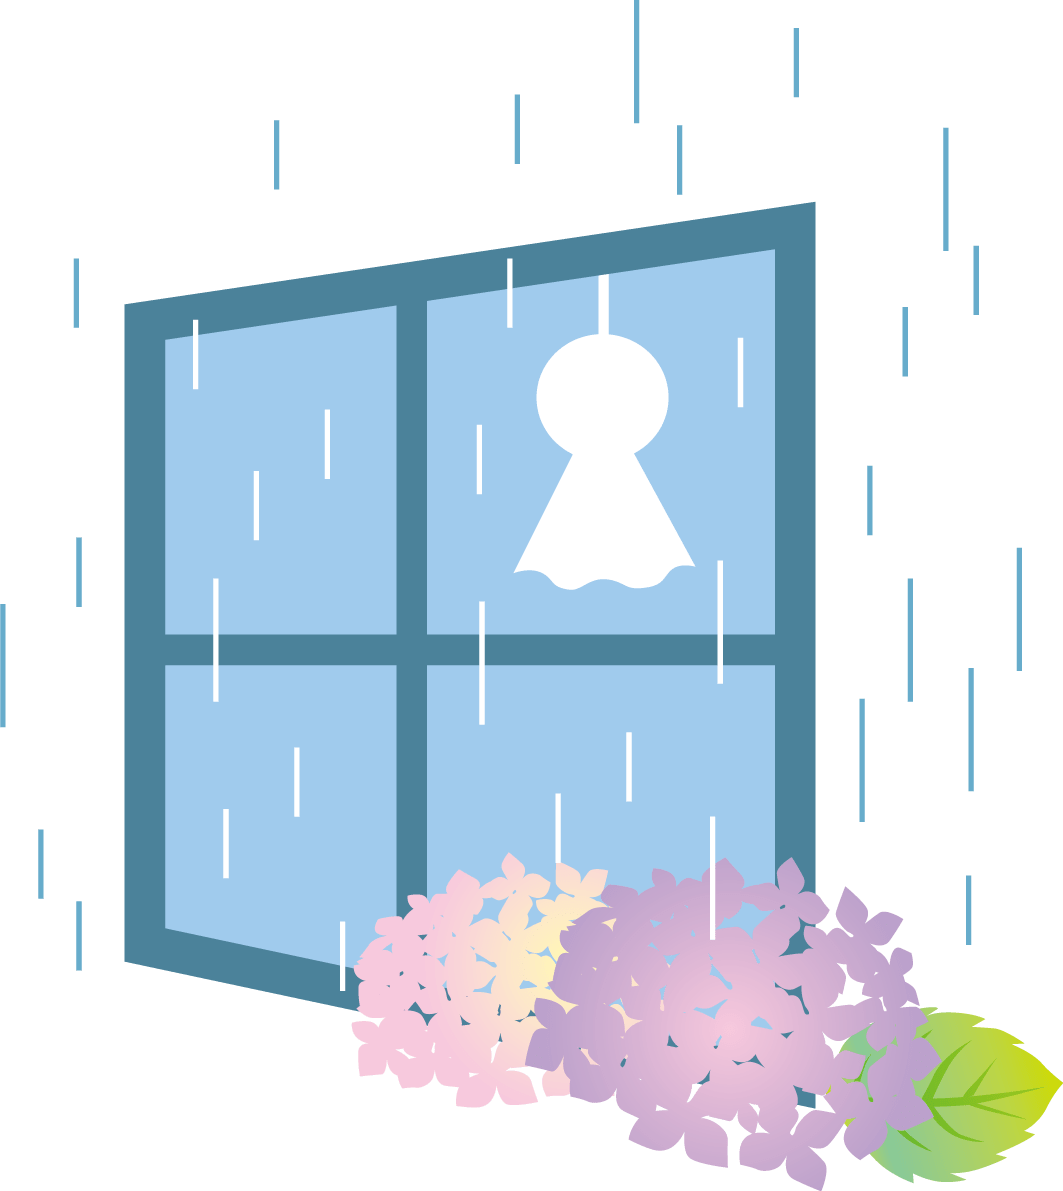 窓と雨とあじさいとてるてる坊主のかわいい梅雨 イラスト素材 超多くの無料かわいいイラスト素材